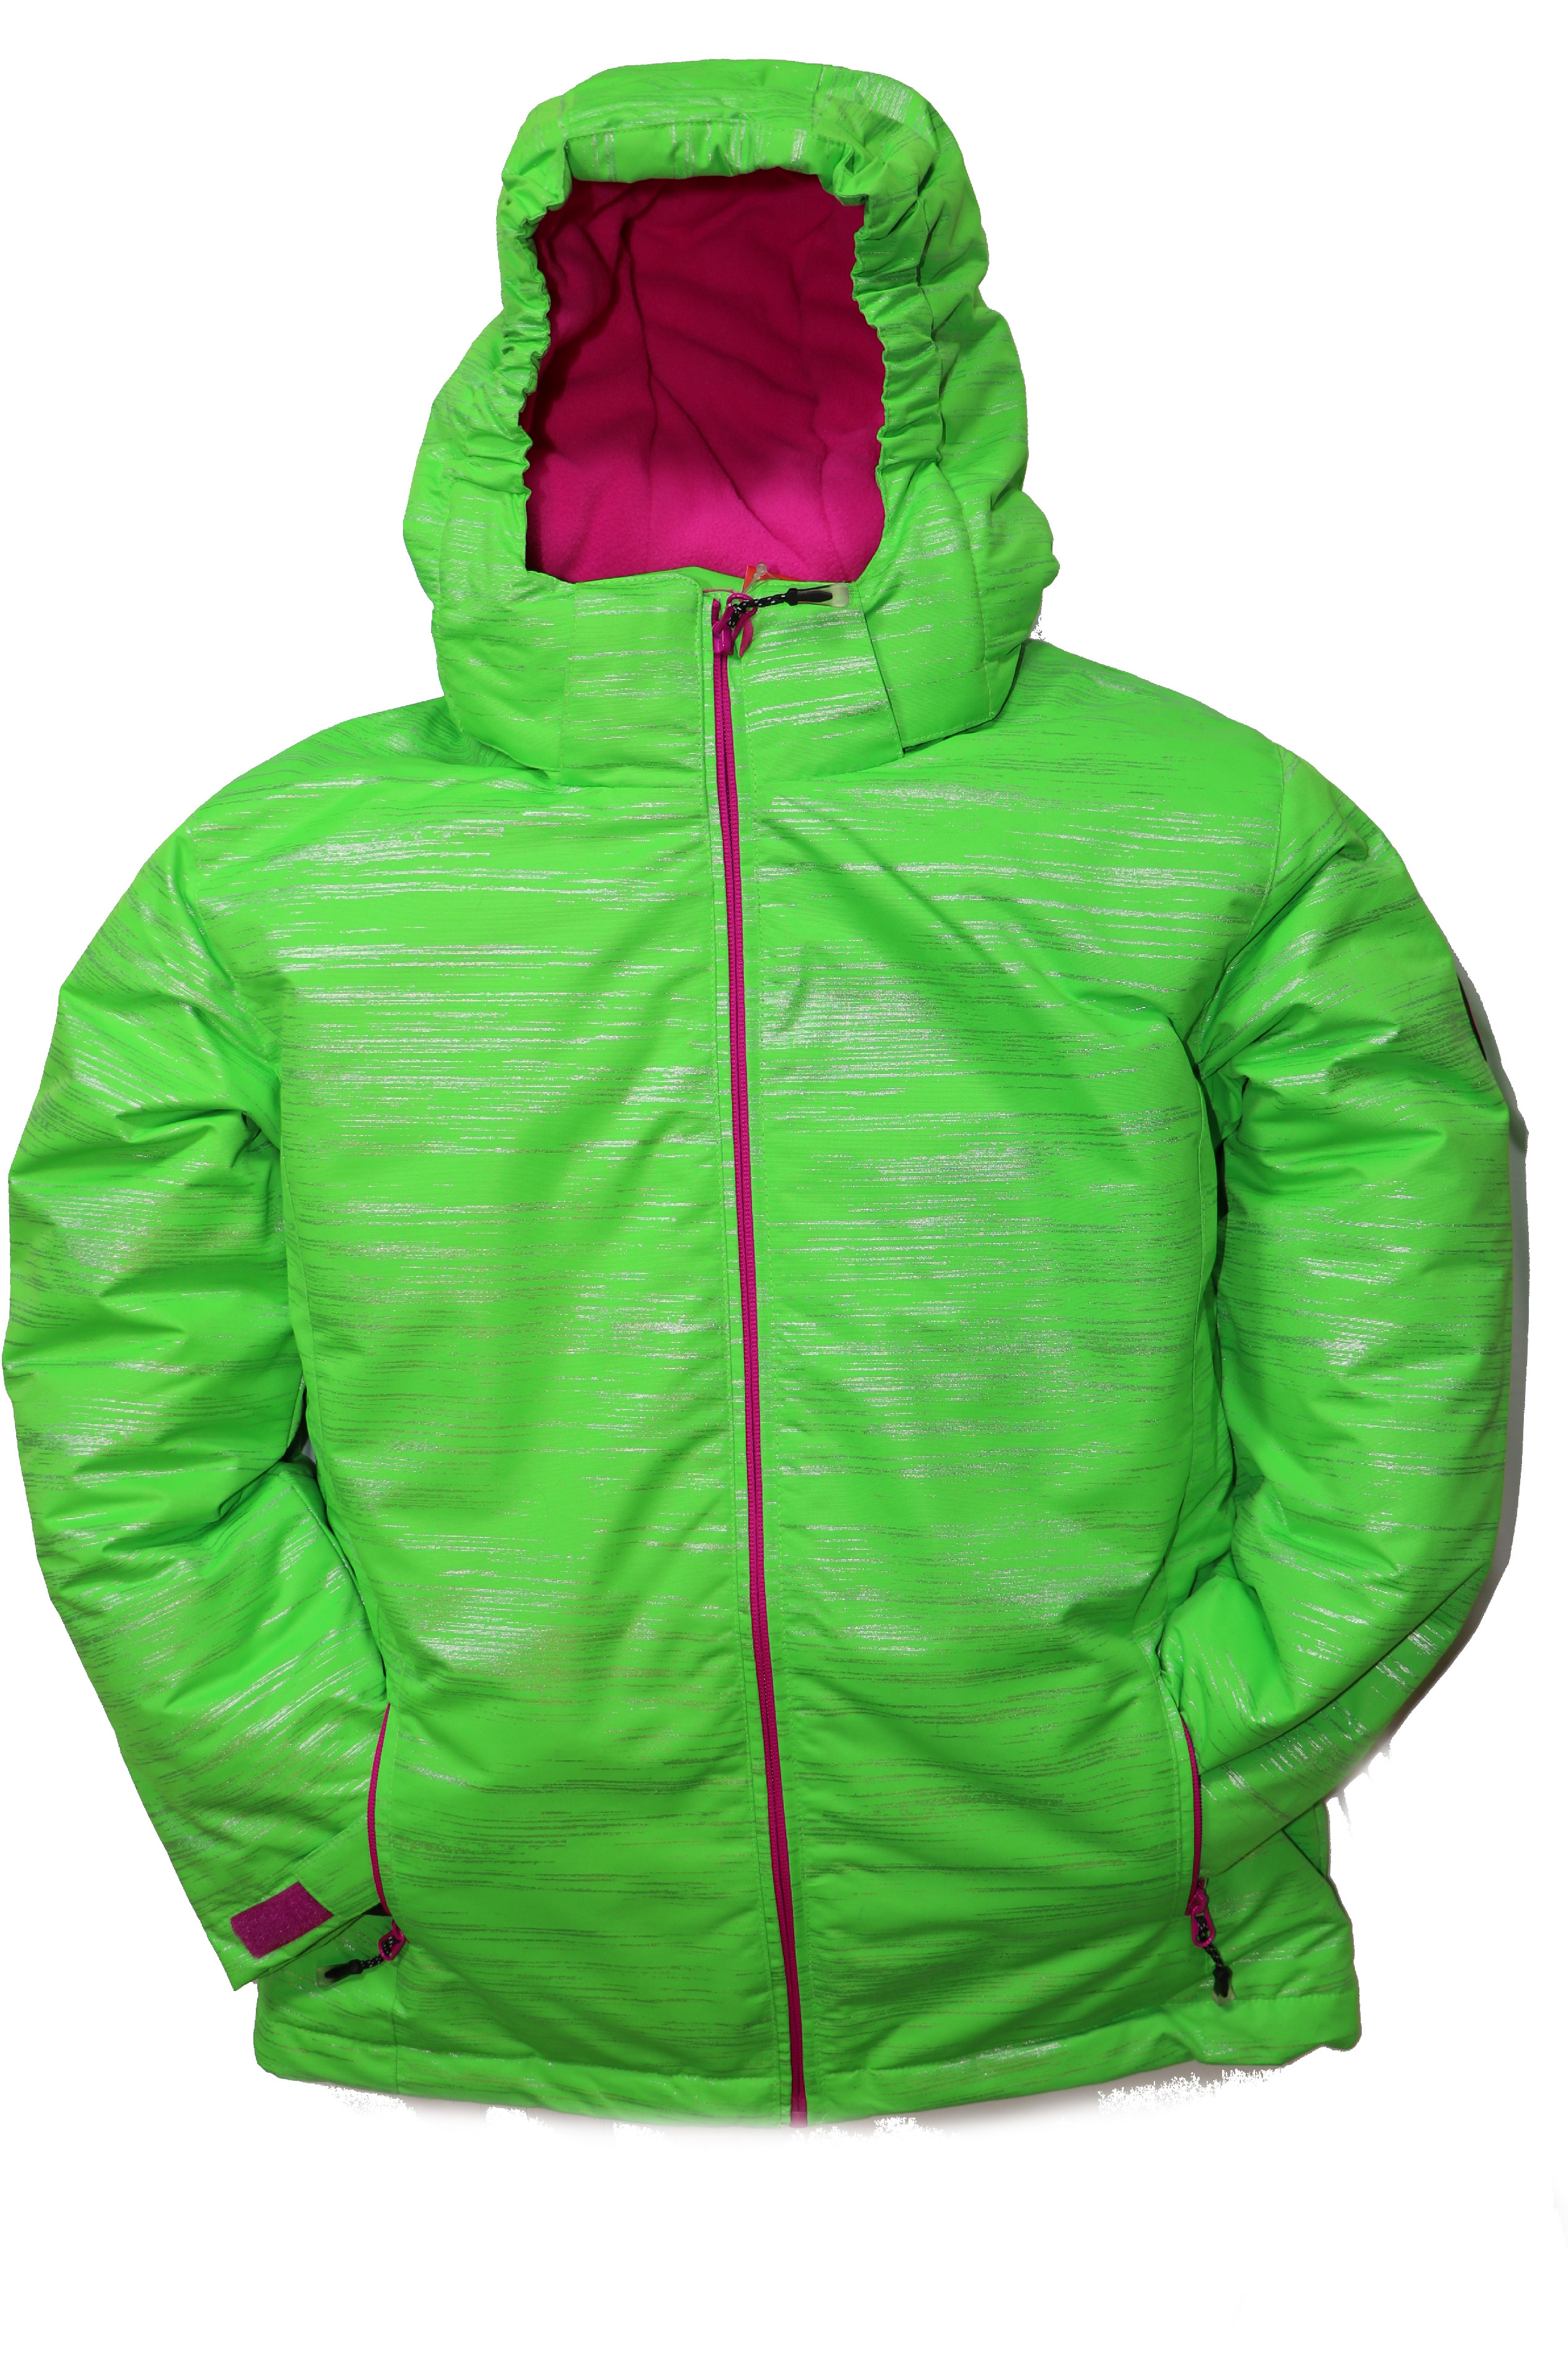 Dětská zimní bunda volného střihu HA04-M2 zelená vel. 134-164 cm Barva: Zelená, Velikost: 140 - 146 cm